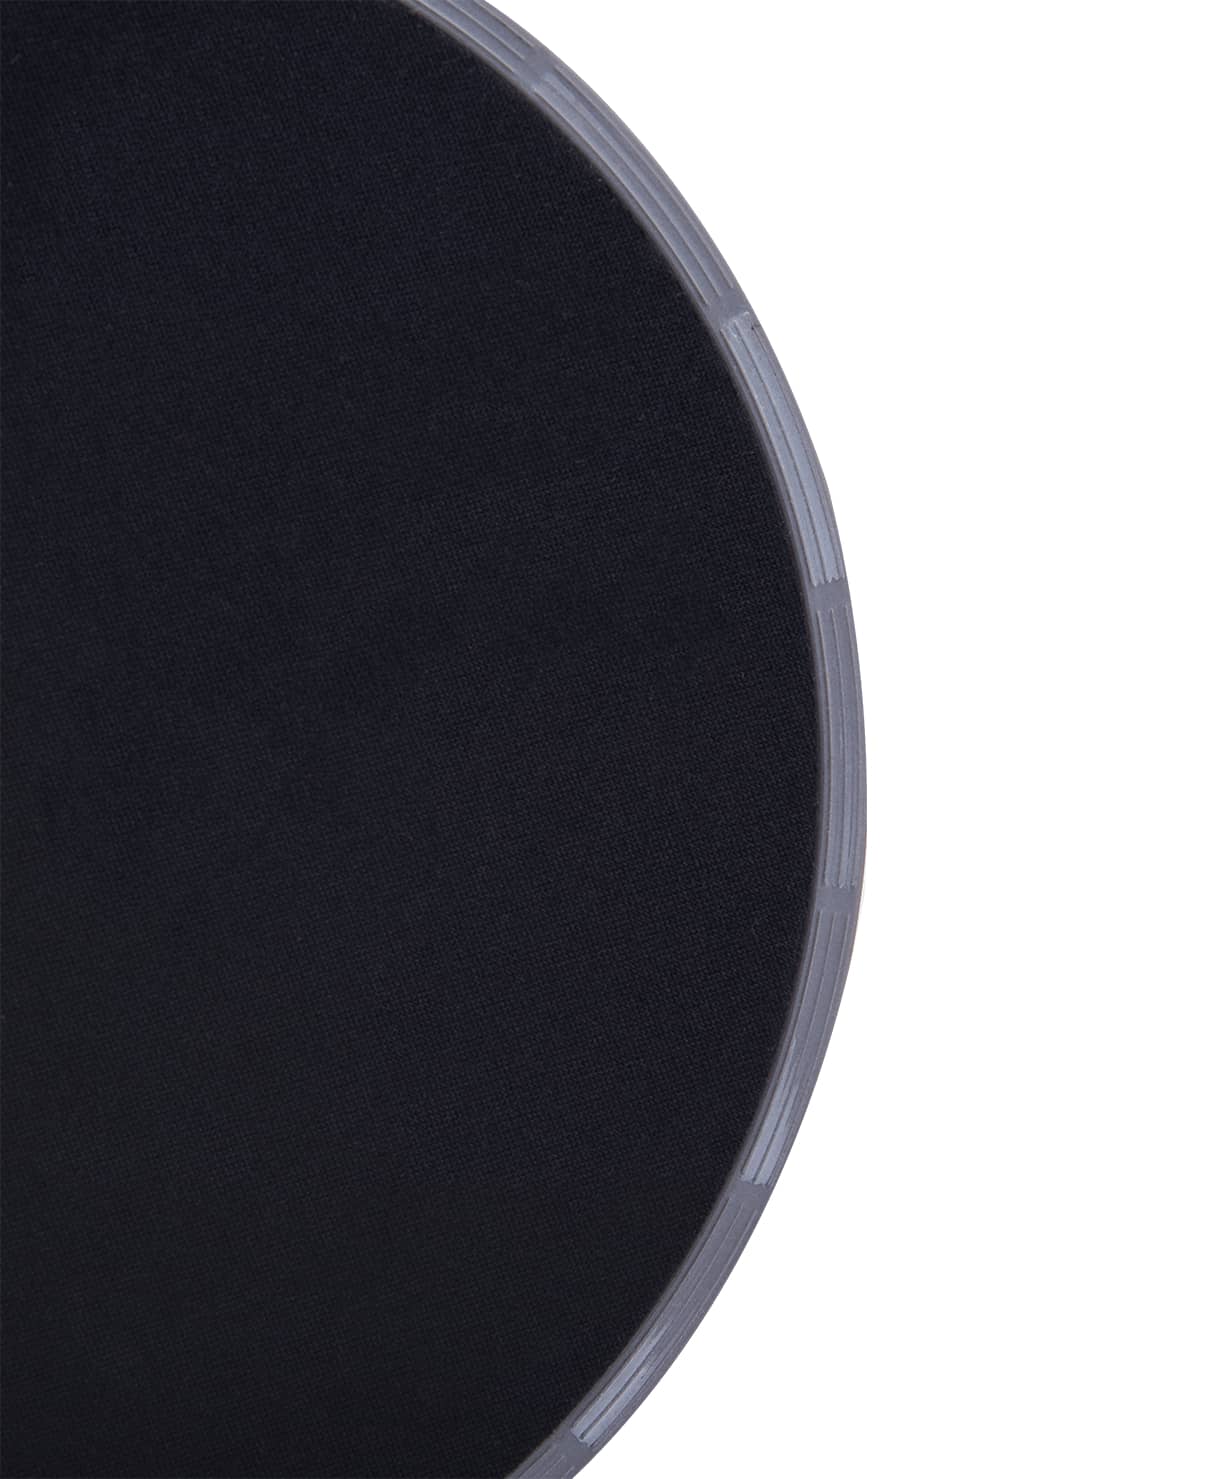 Глайдинг диски для скольжения FS-101, серый/черный